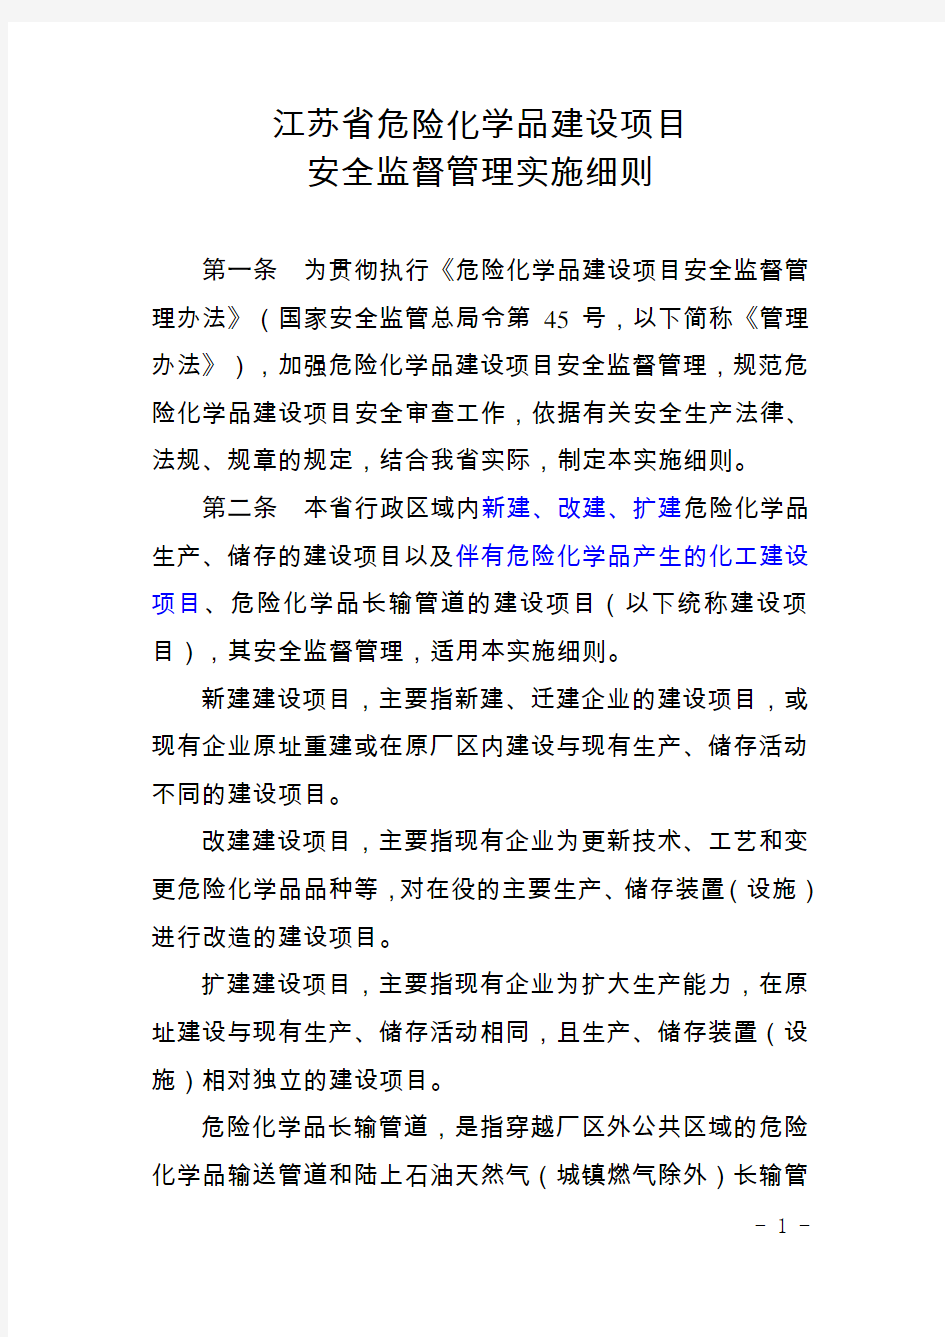 江苏省危险化学品建设项目安全监督管理实施细则